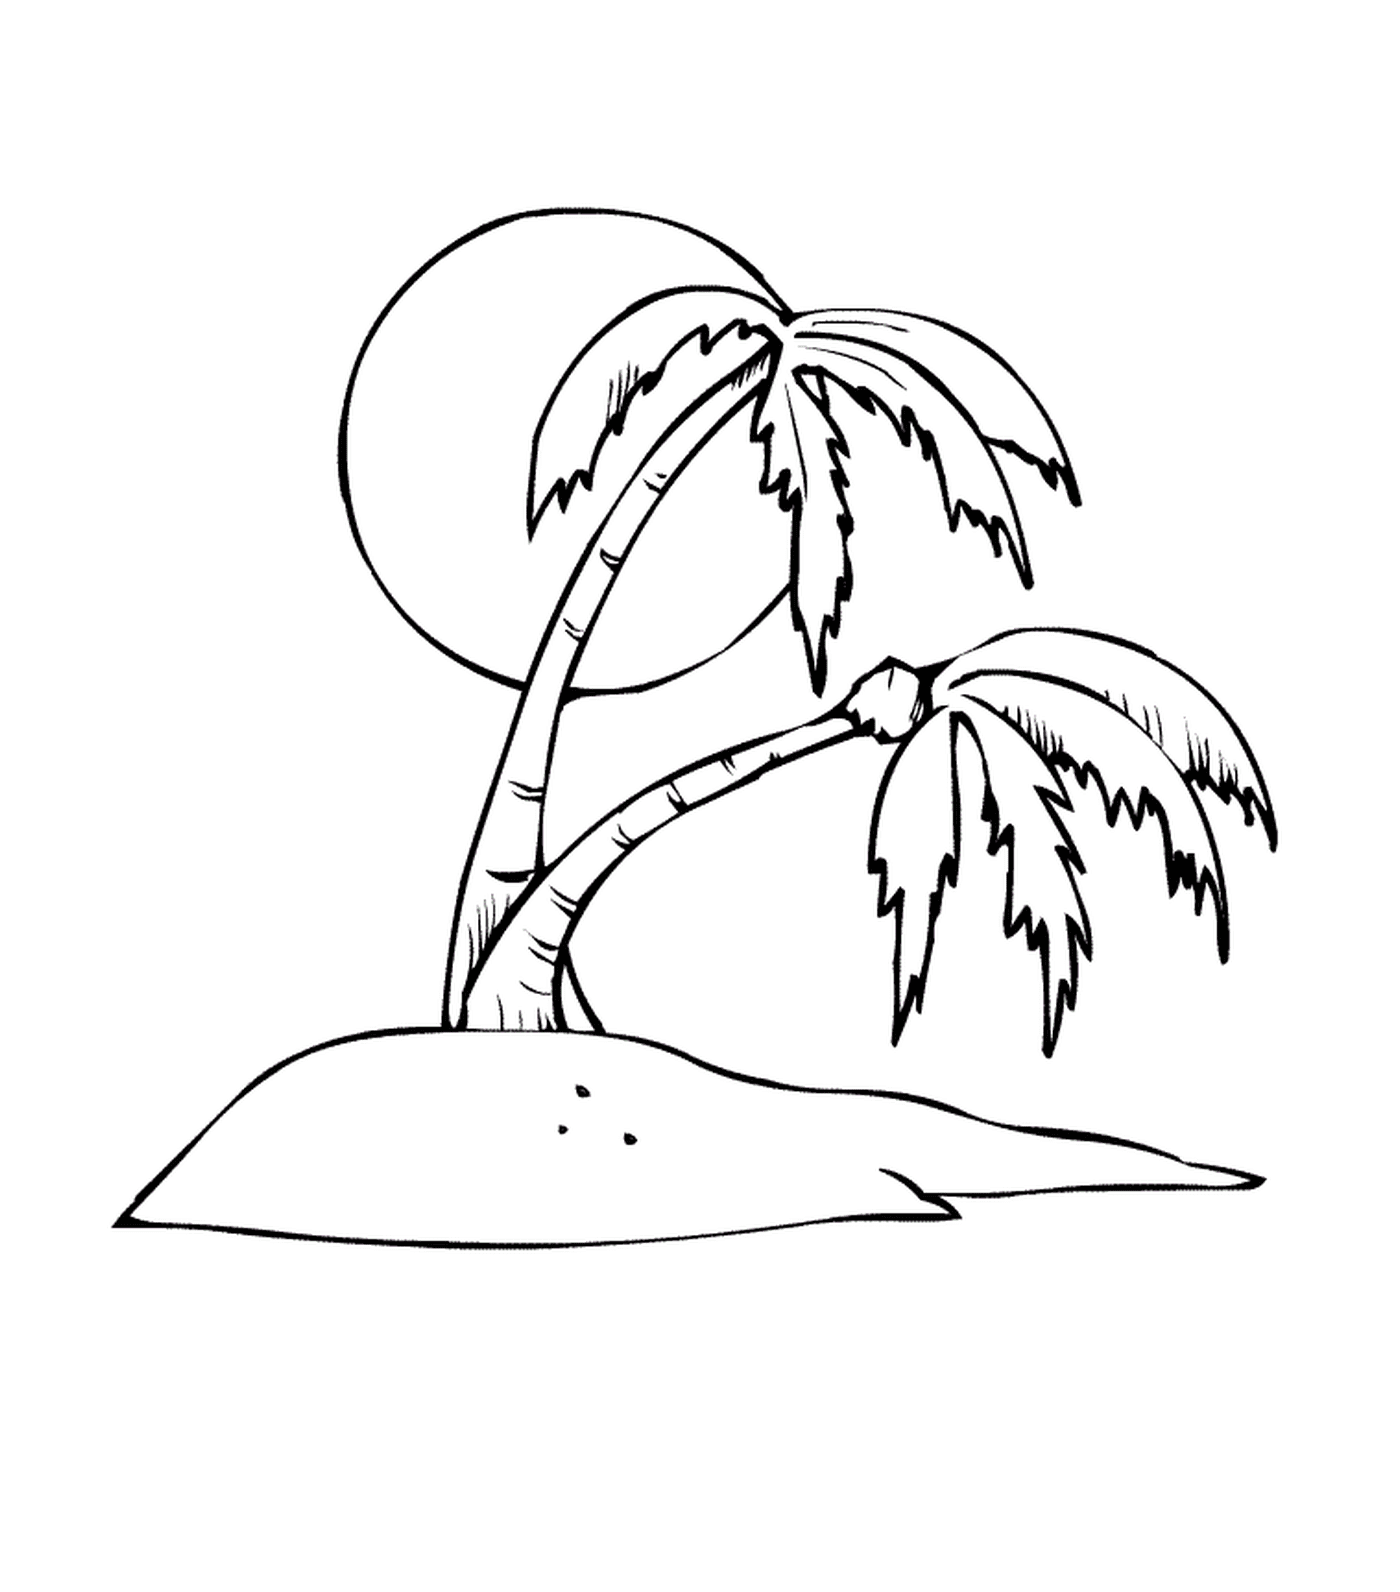  棕榈树,阳光之心 